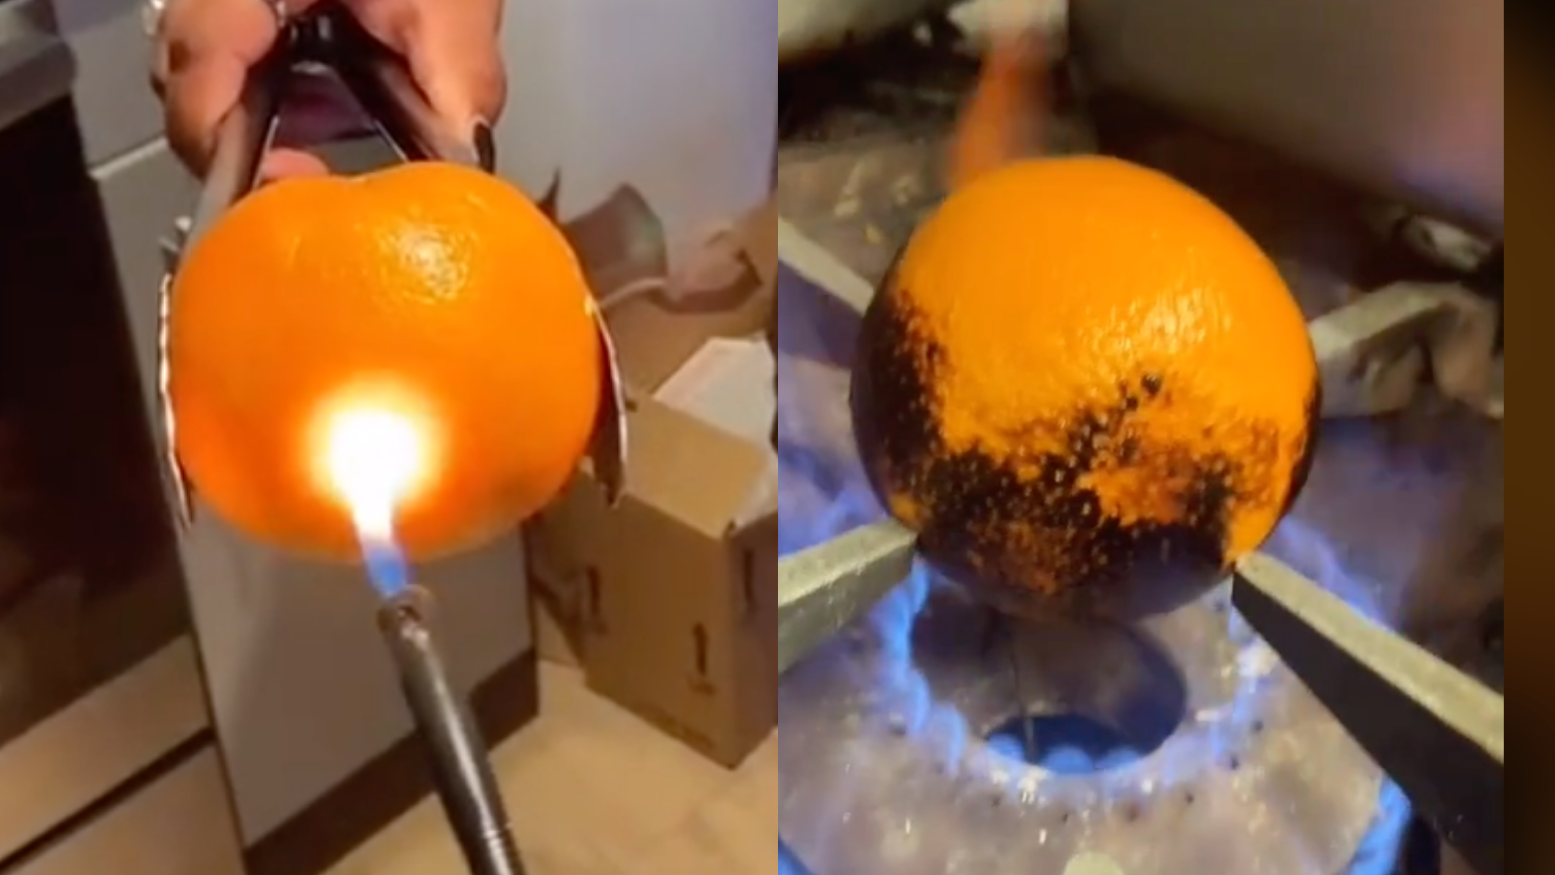 TikTok users who lost their ability to taste are burning oranges as a way to help. (@katie.kotlowski and @toosmxll via TikTok)